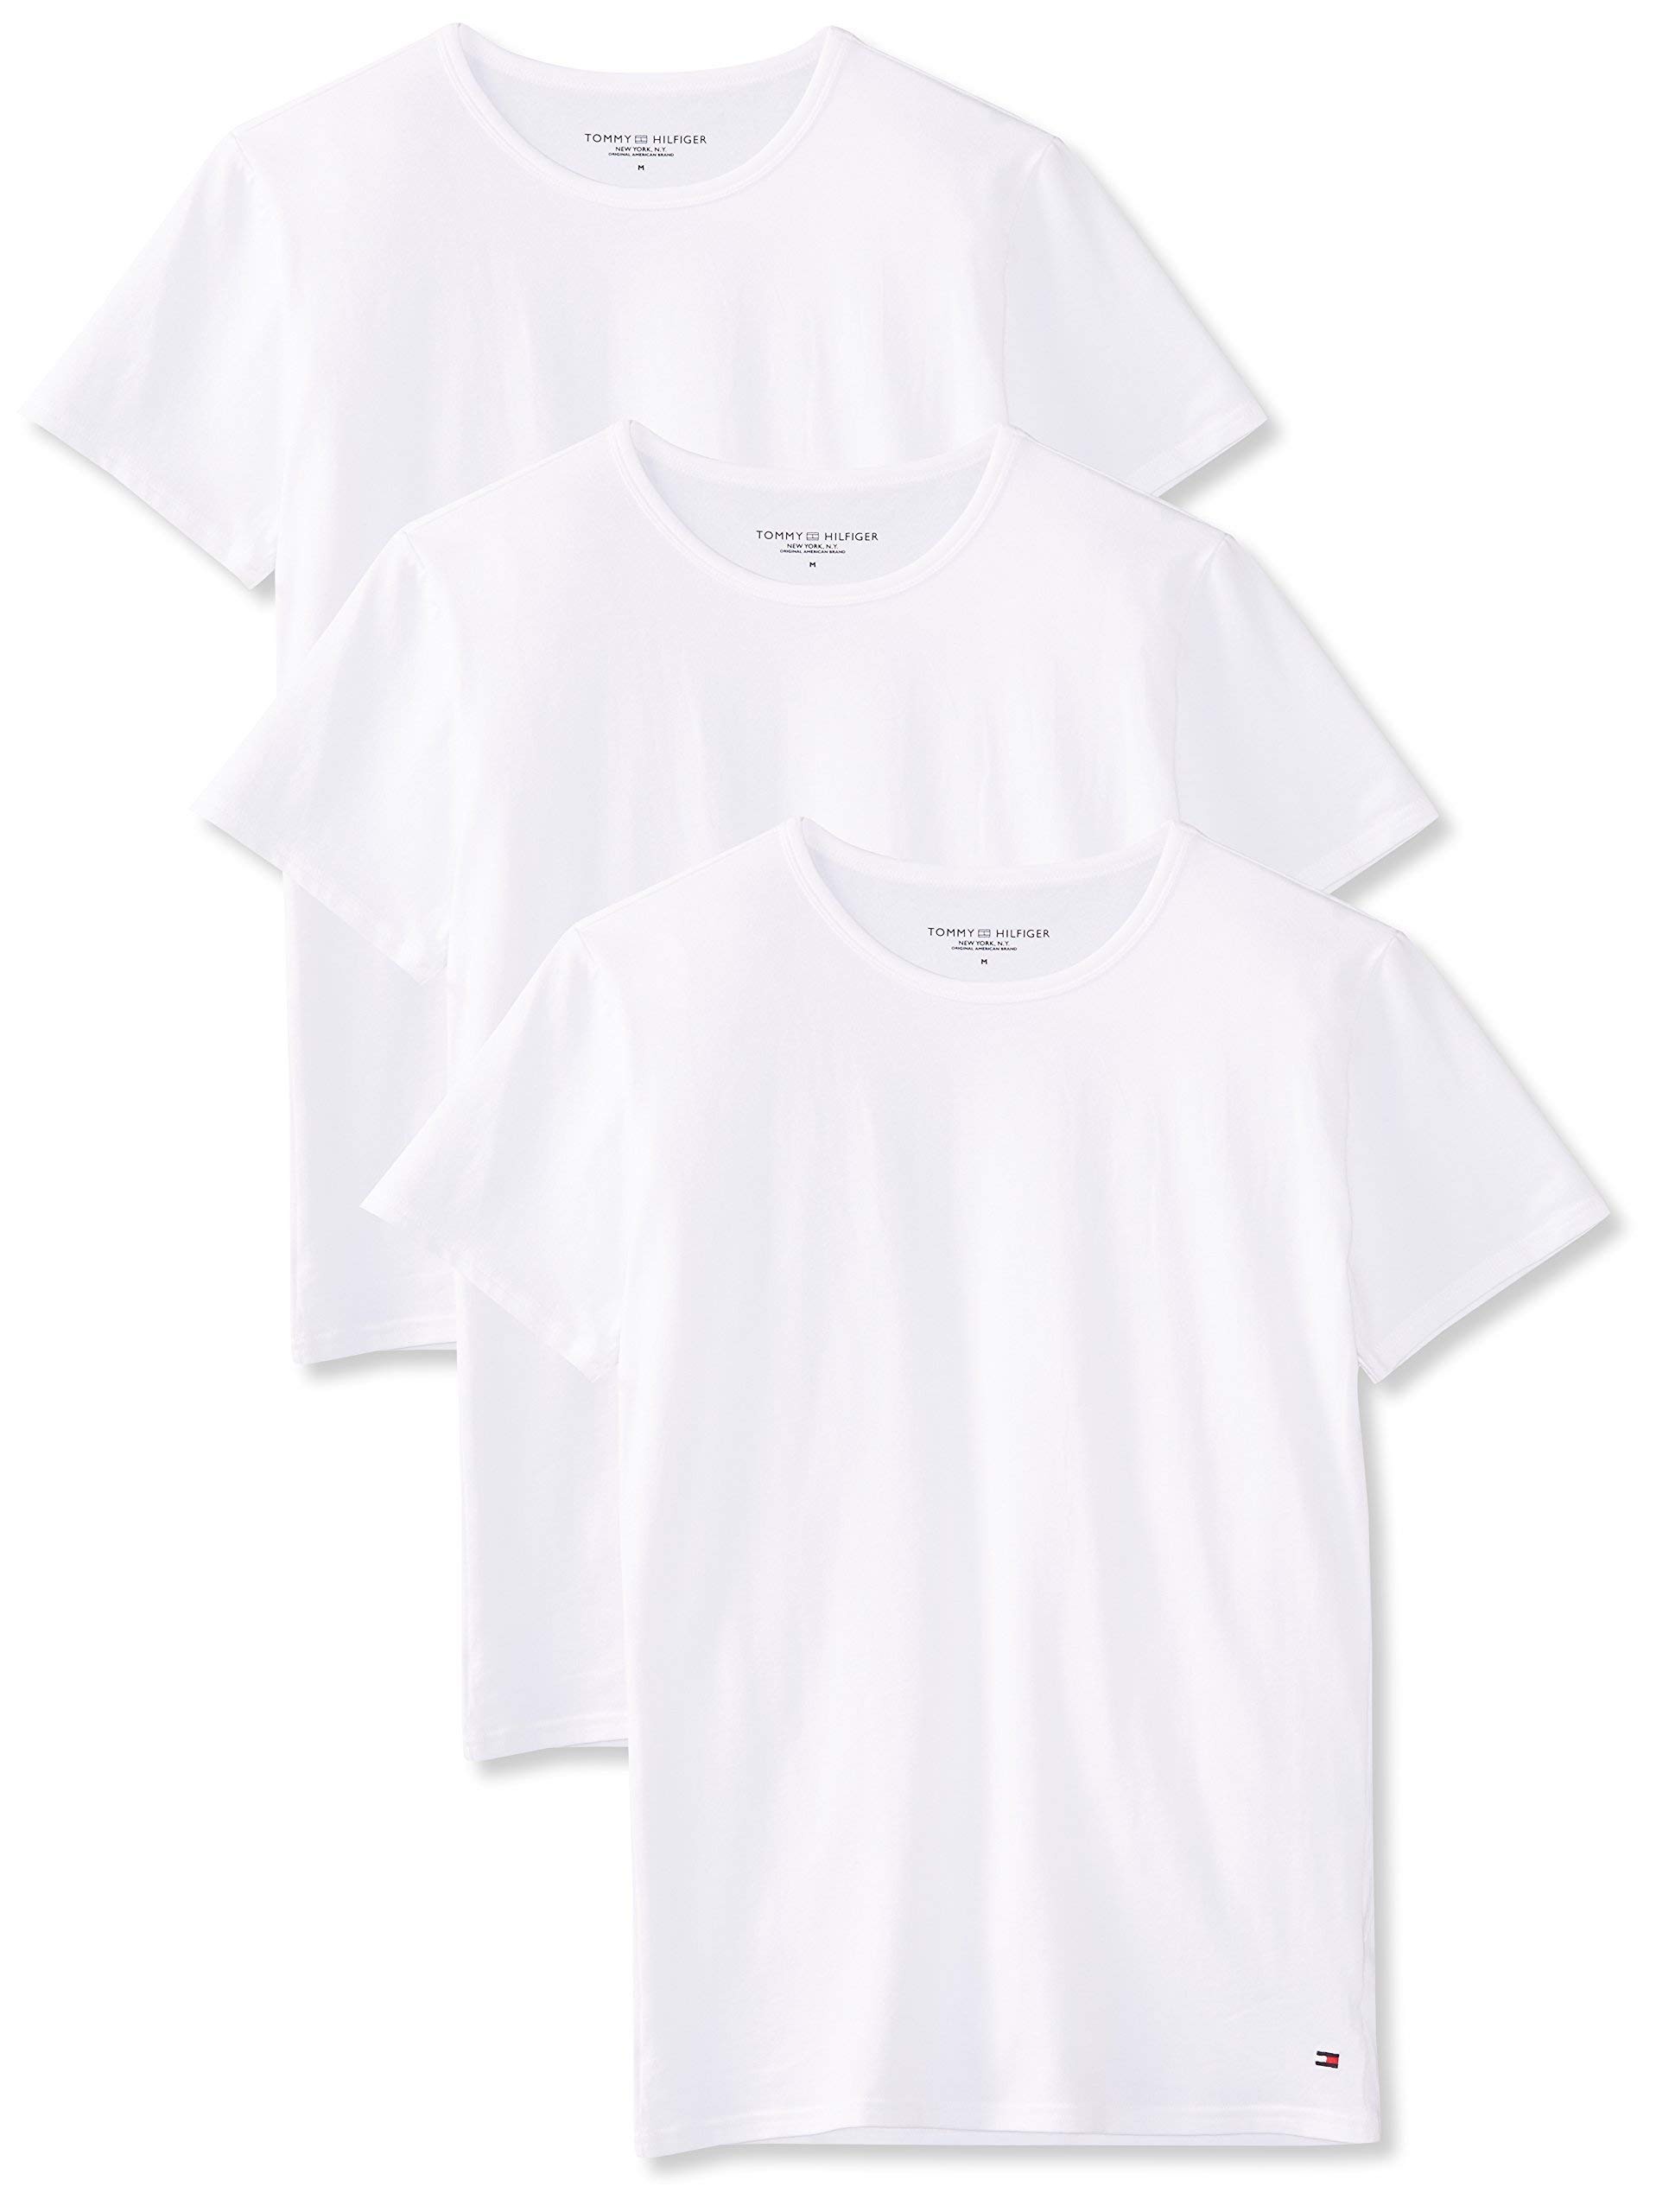 Tommy Hilfiger Herren T-Shirt Kurzarm Rundhalsausschnitt (3er Pack), Weiß (White), XL